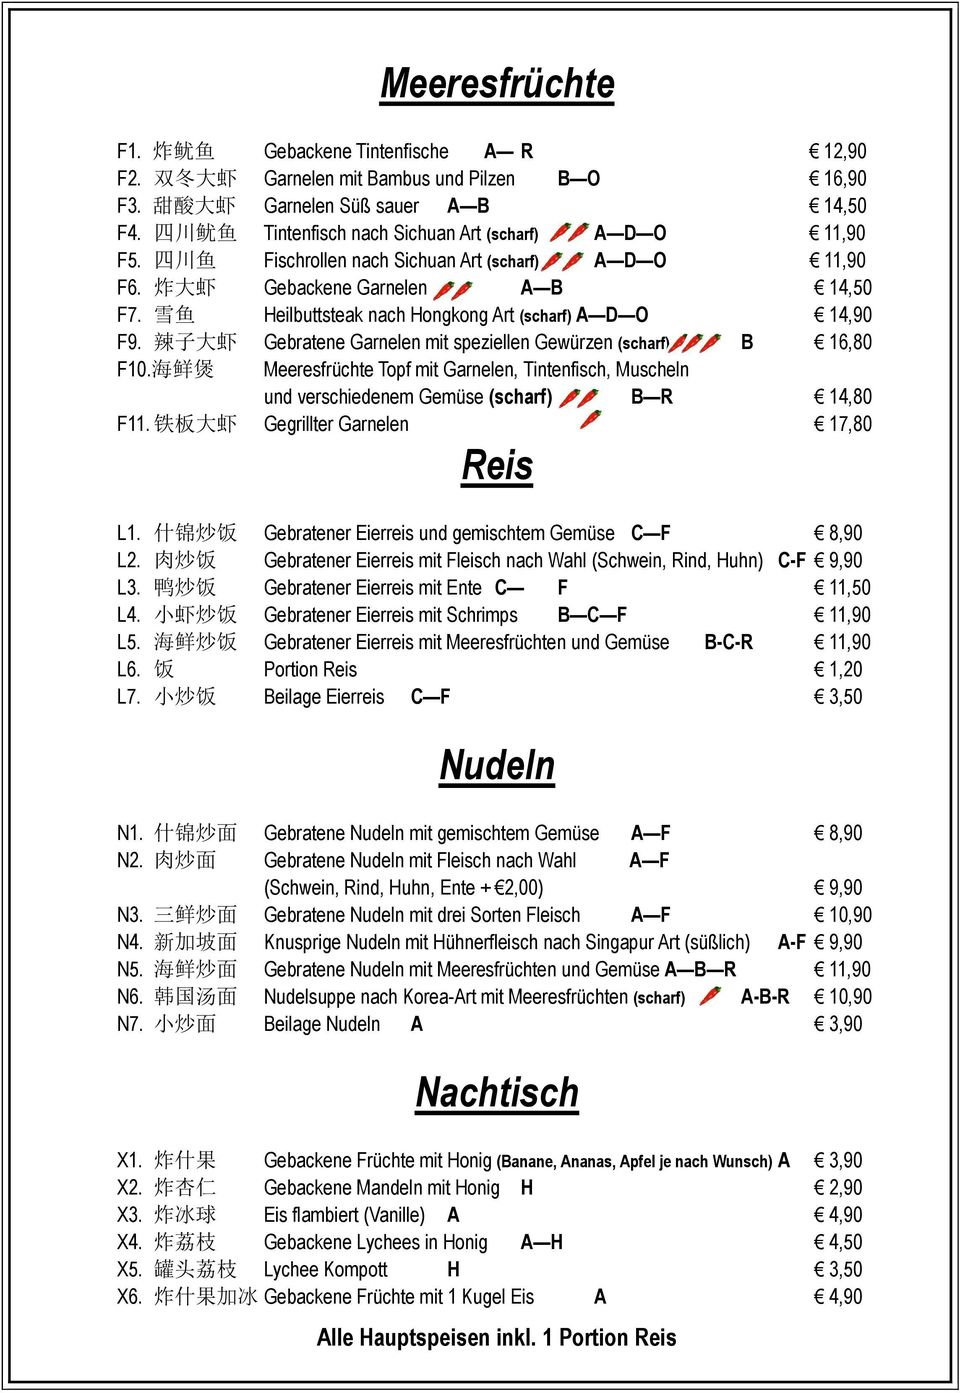 雪 鱼 Heilbuttsteak nach Hongkong Art (scharf) A D O 14,90 F9. 辣 子 大 虾 Gebratene Garnelen mit speziellen Gewürzen (scharf) B 16,80 F10.